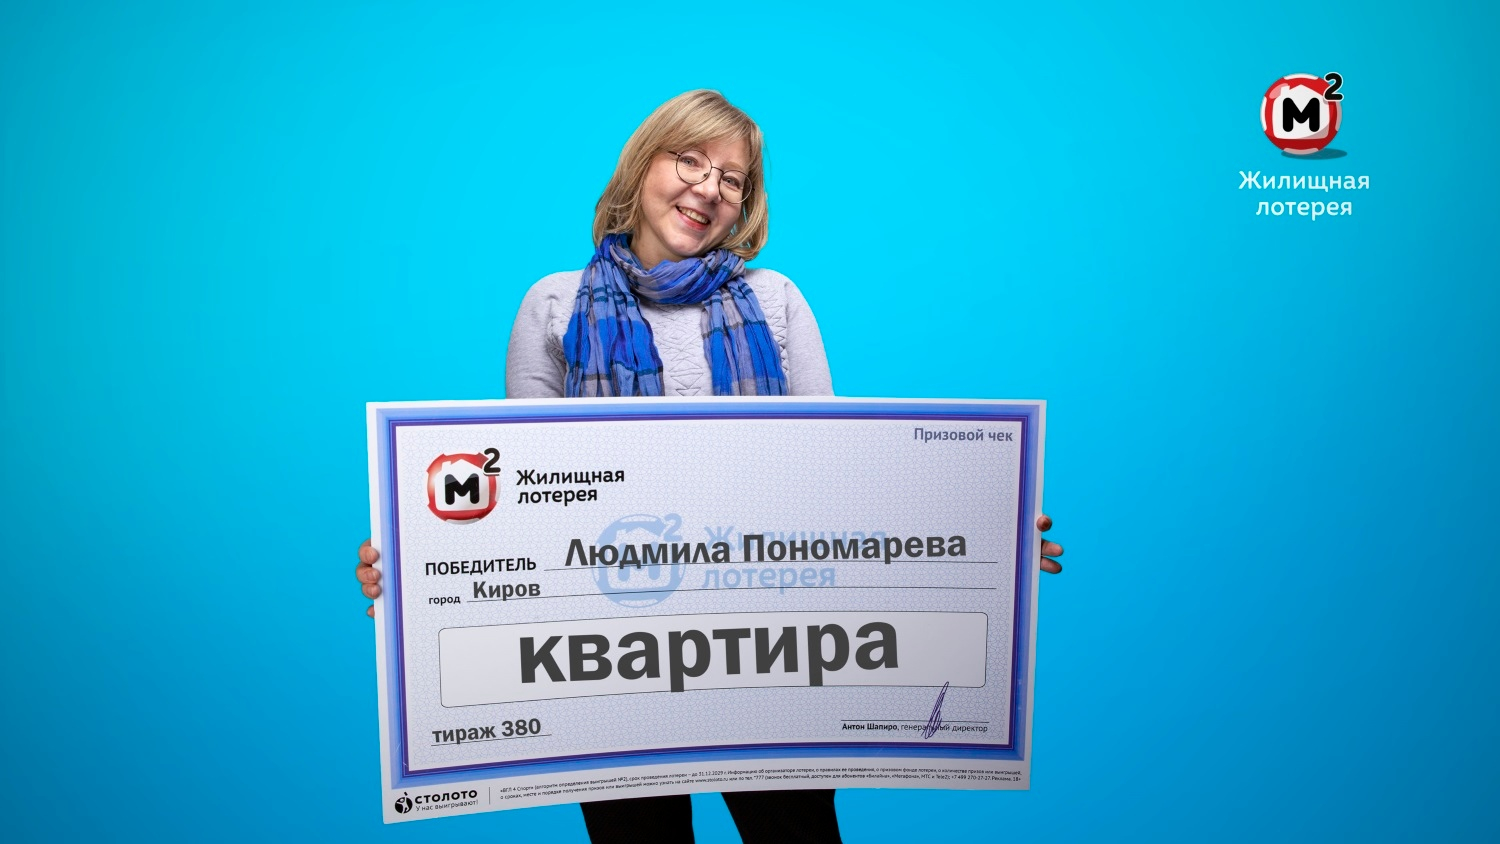 Экономист из Кирова выиграла в лотерею квартиру